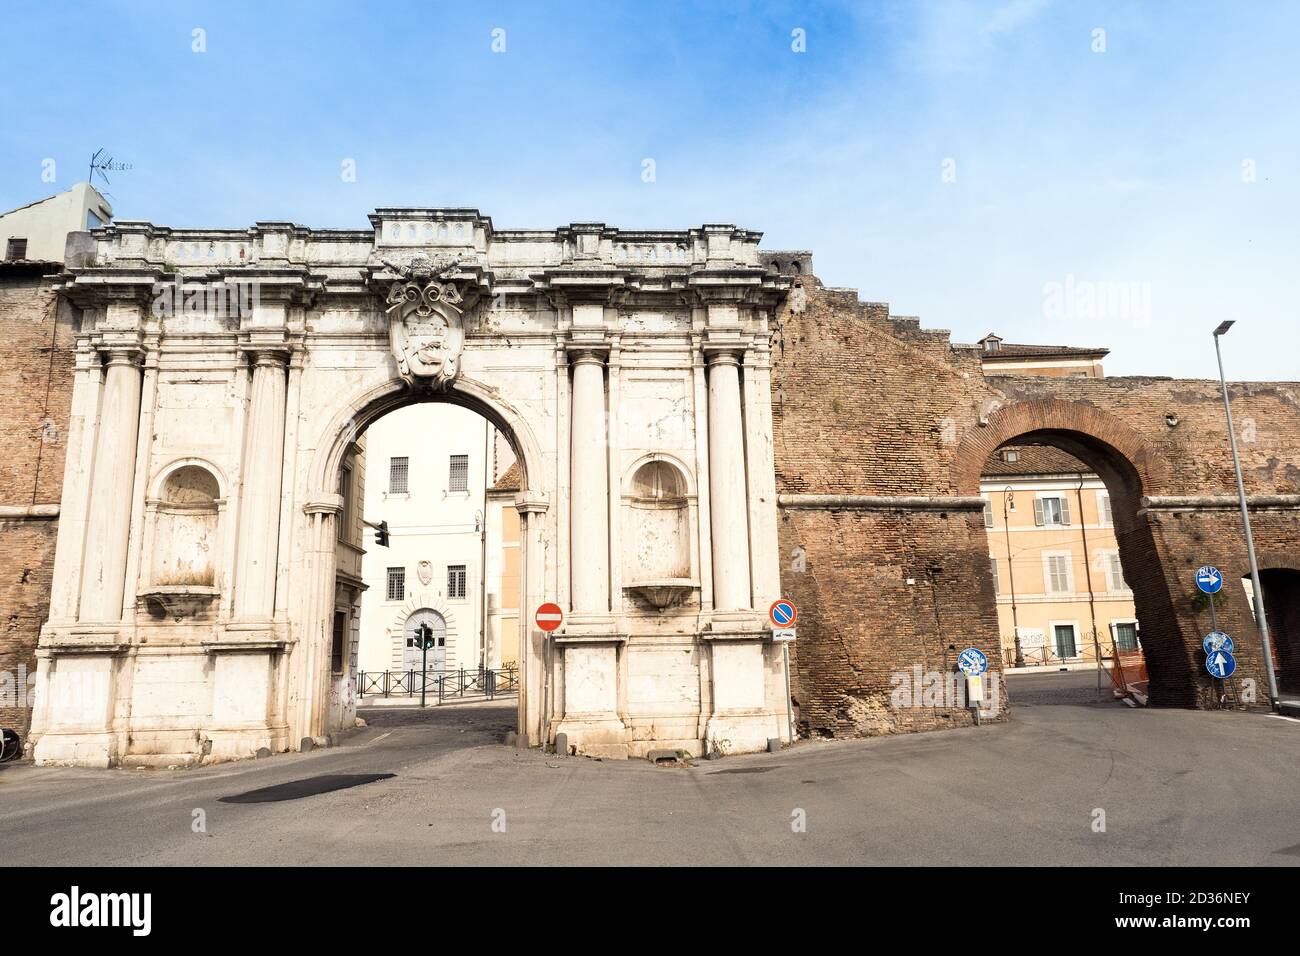 Porta Portese est une ancienne porte d'entrée de la ville, située au bout de la via Portuense, à environ un pâté de maisons des rives du Tibre, à l'extrémité sud du Rione Trastevere - Rome, Italie Banque D'Images